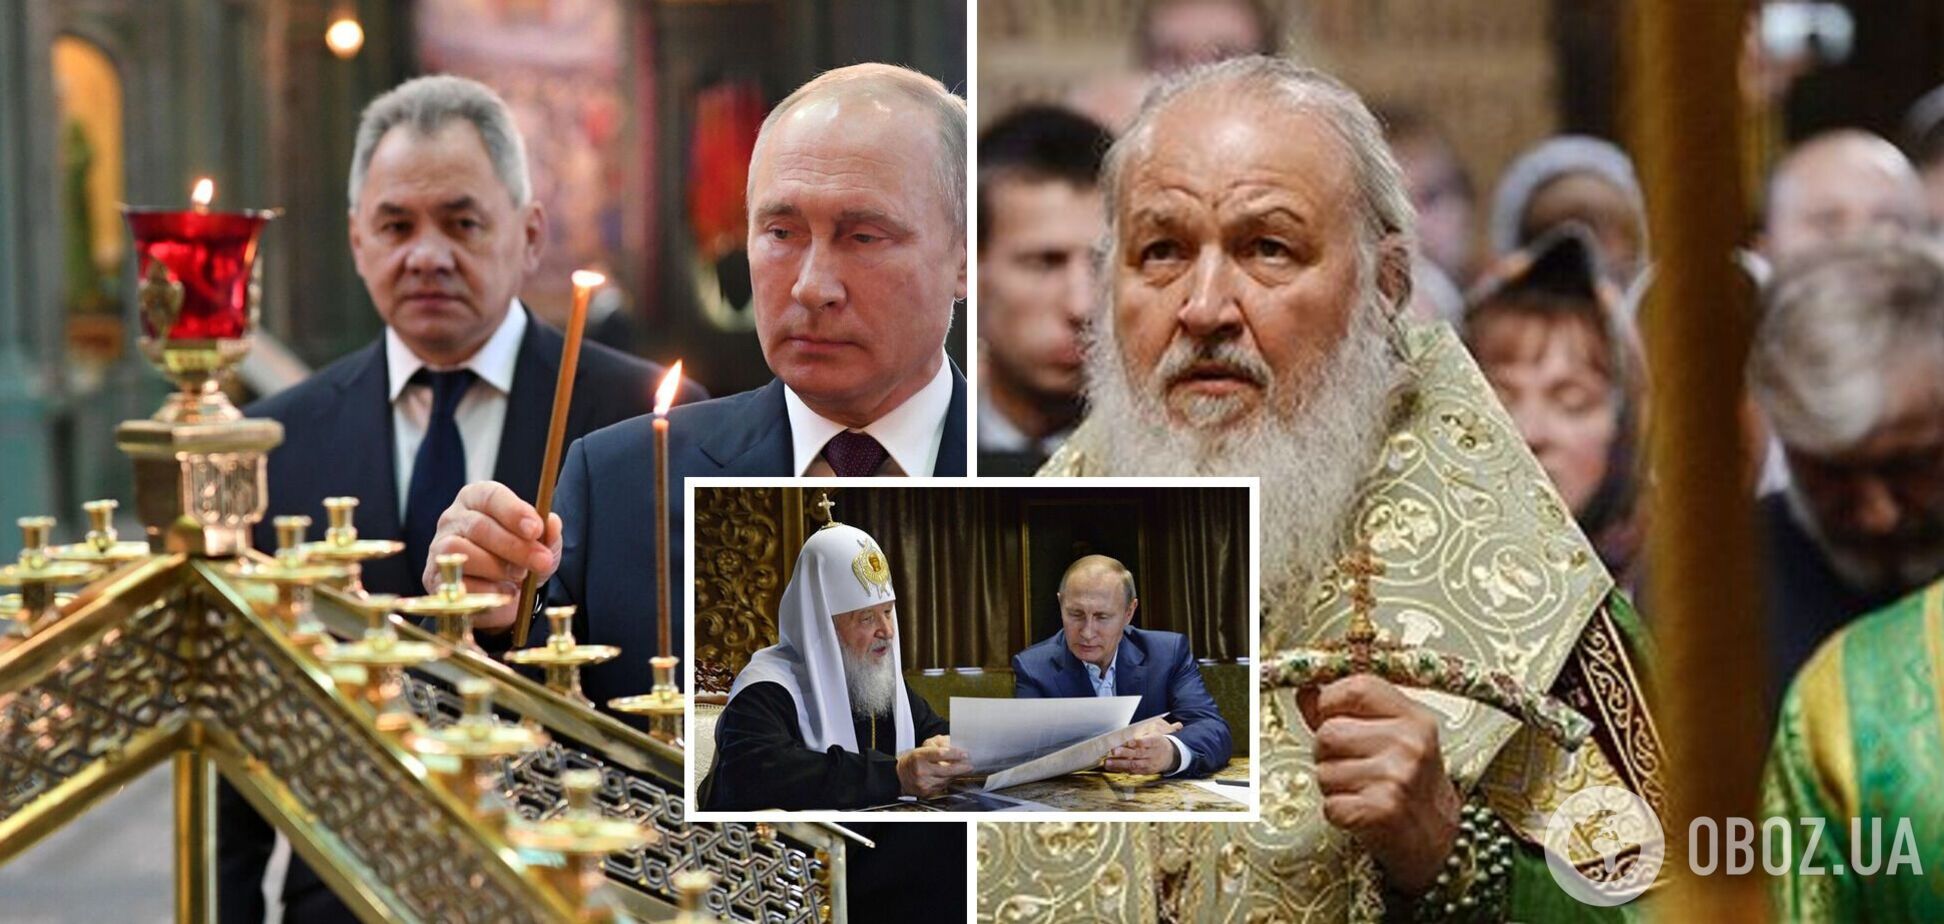 'В бога они оба не верят': как Путин вместо Кирилла стал 'первоиерархом' РПЦ. Интервью с Фейгиным